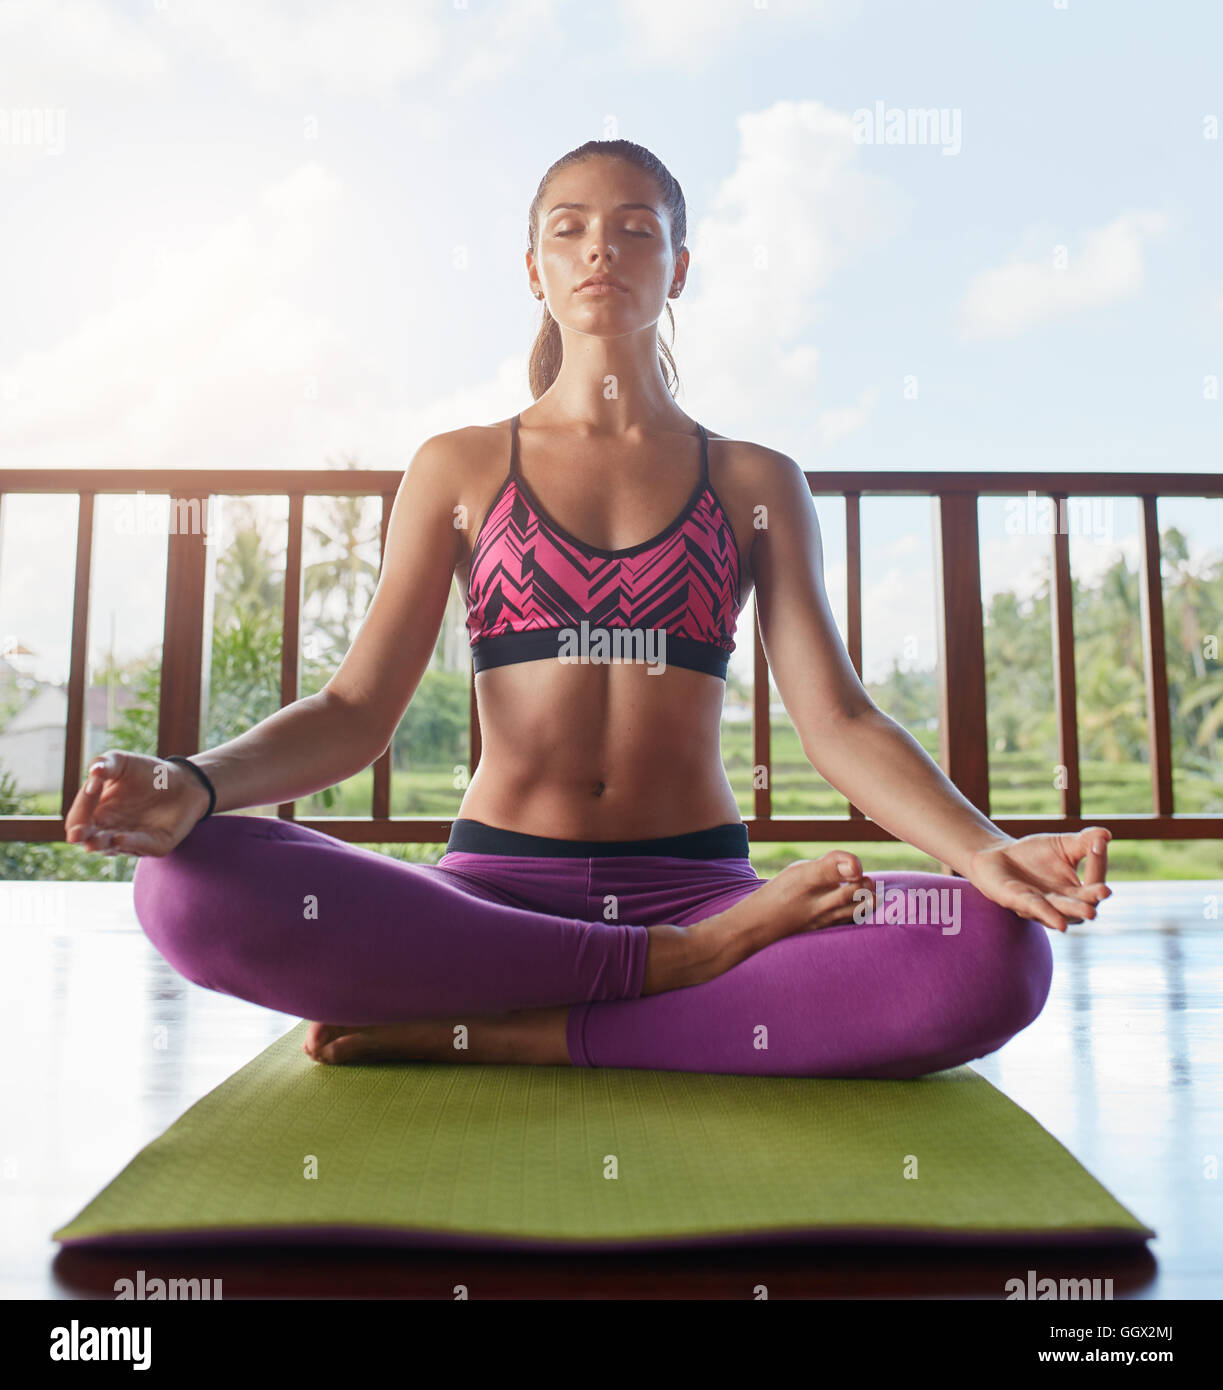 Jeune femme assise sur le sol dans la posture de yoga avec les mains sur les genoux, posture de Lotus. modèle féminin de fitness faisant de la méditation de yoga. Banque D'Images